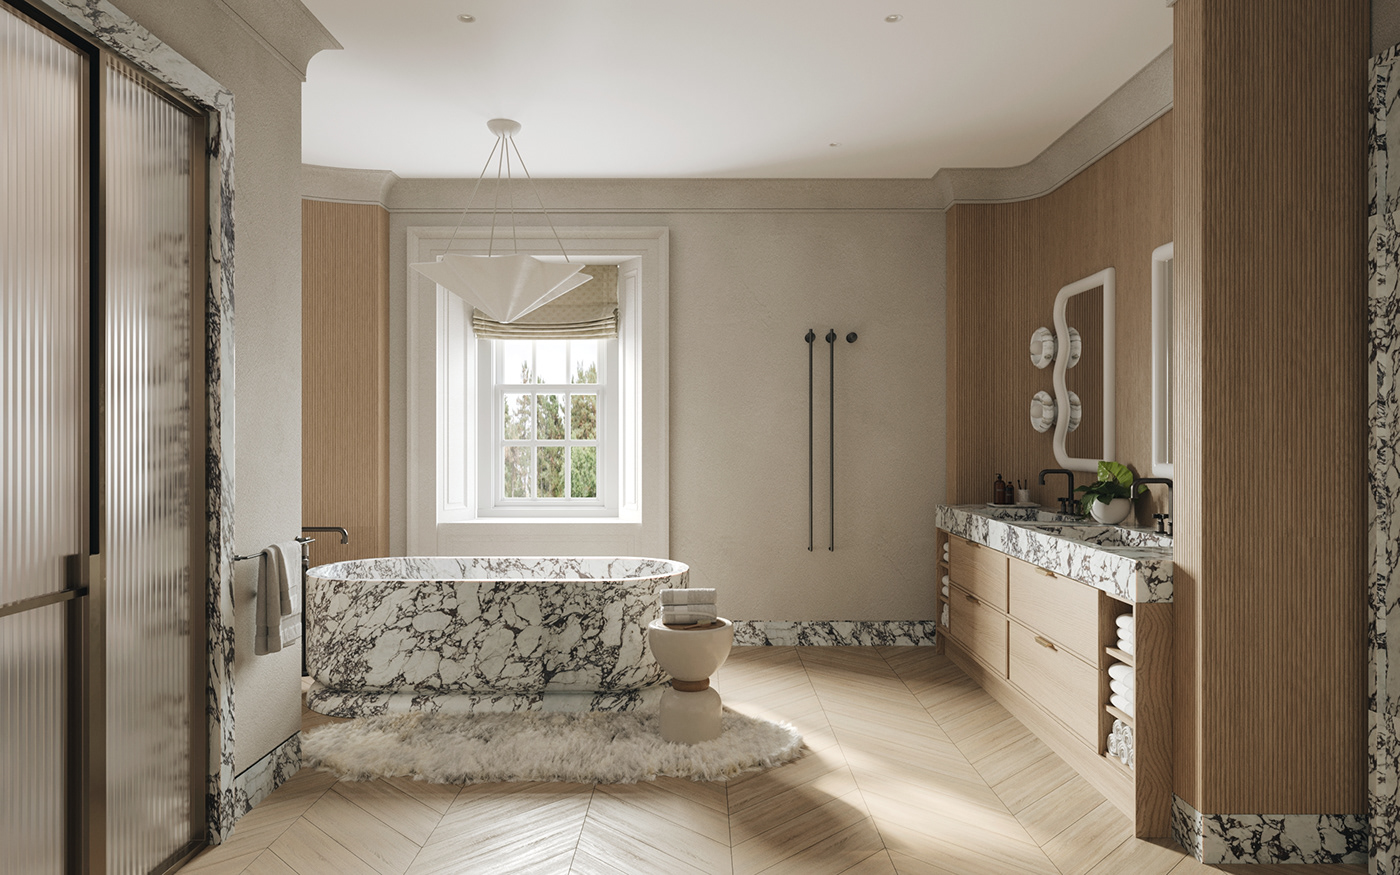 3D 3ds max architecture bathroom corona design interior design  London UK visualization